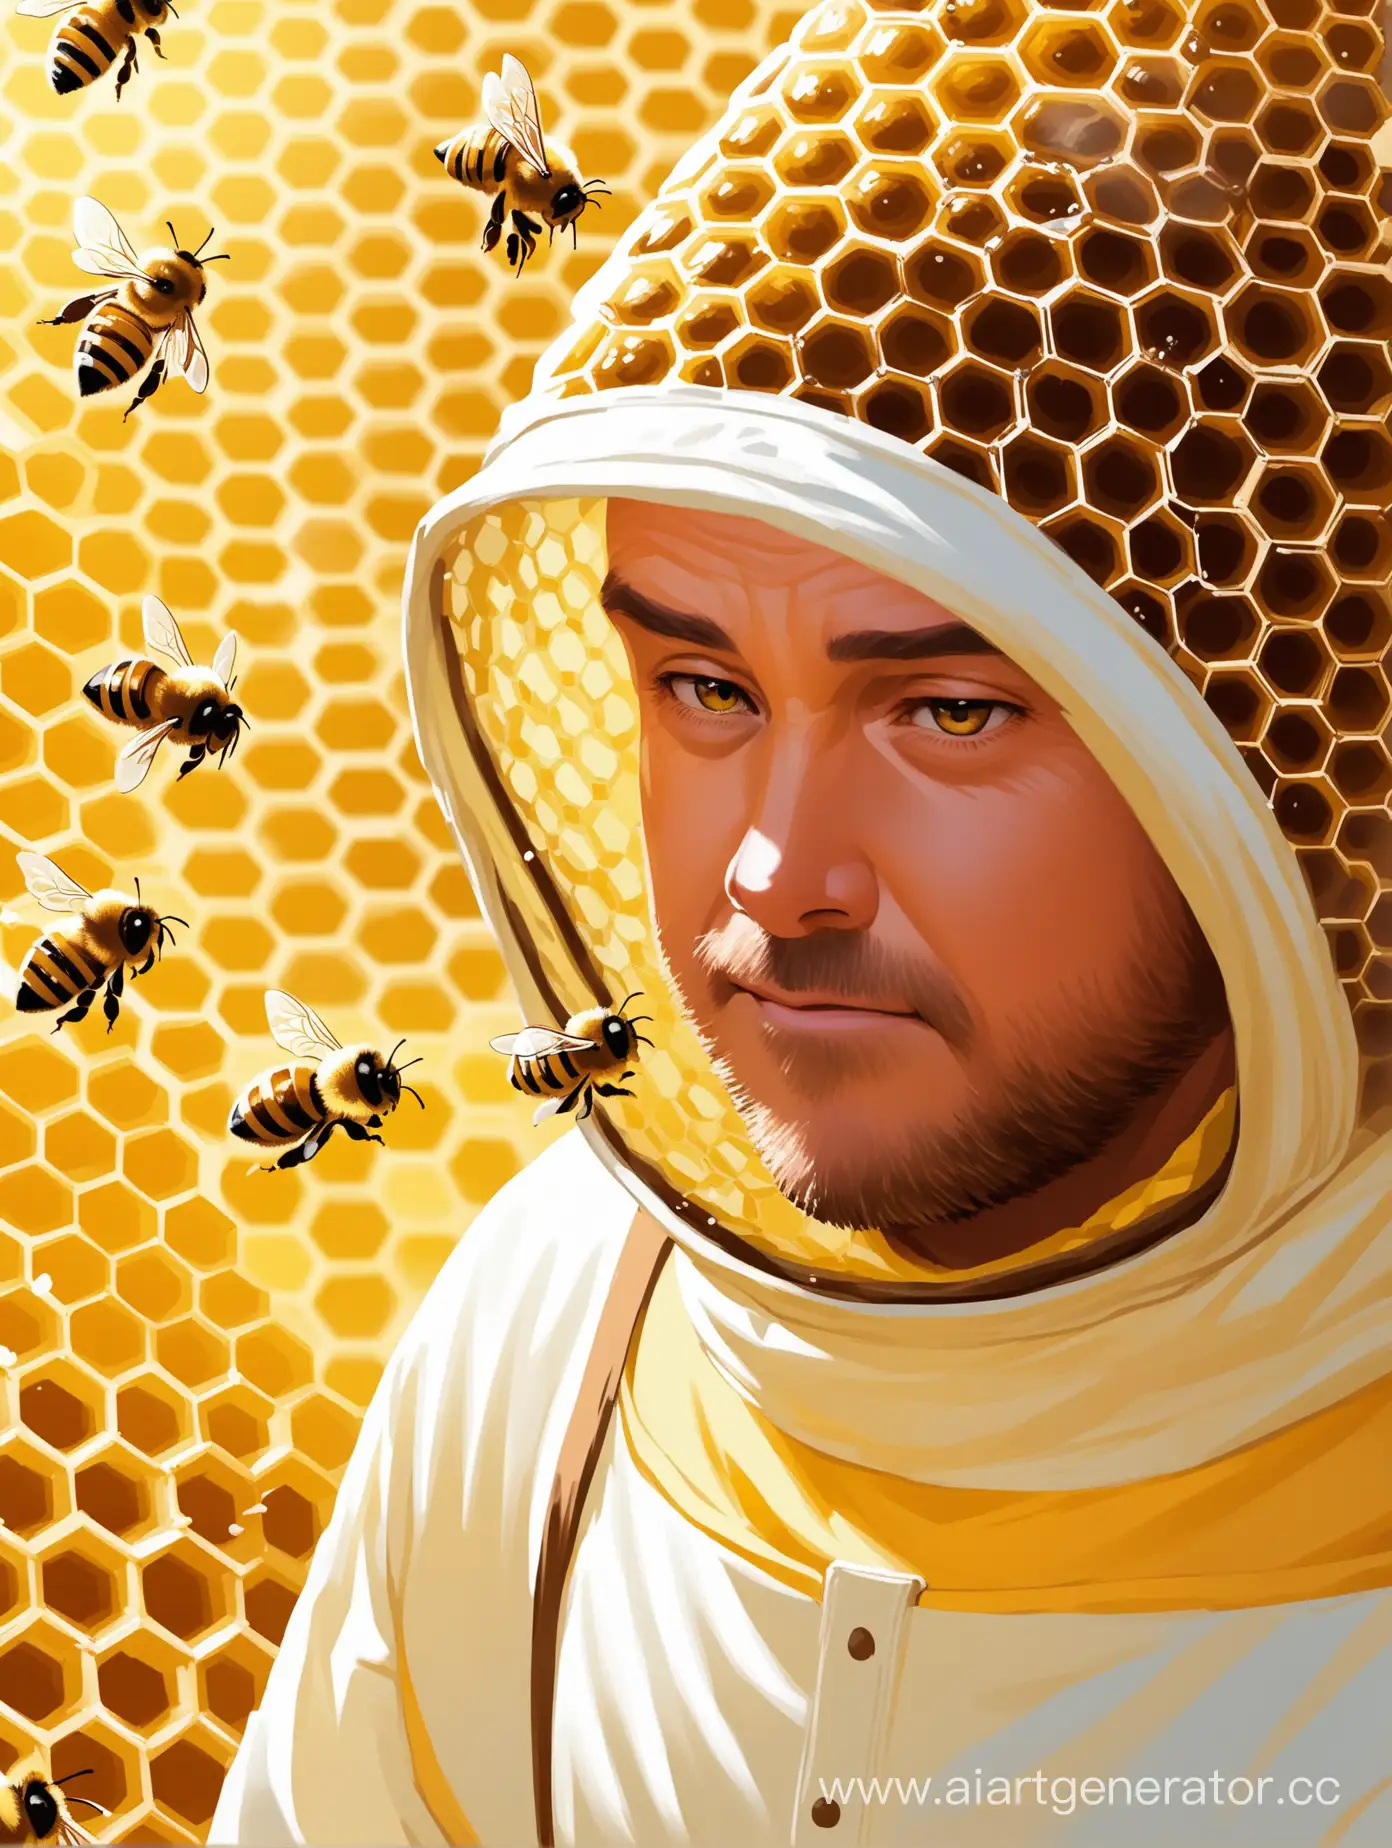 создай фотографию пчеловода который воняет , поэтому его пчелы его не узнают , пчелы должны на него нападать
